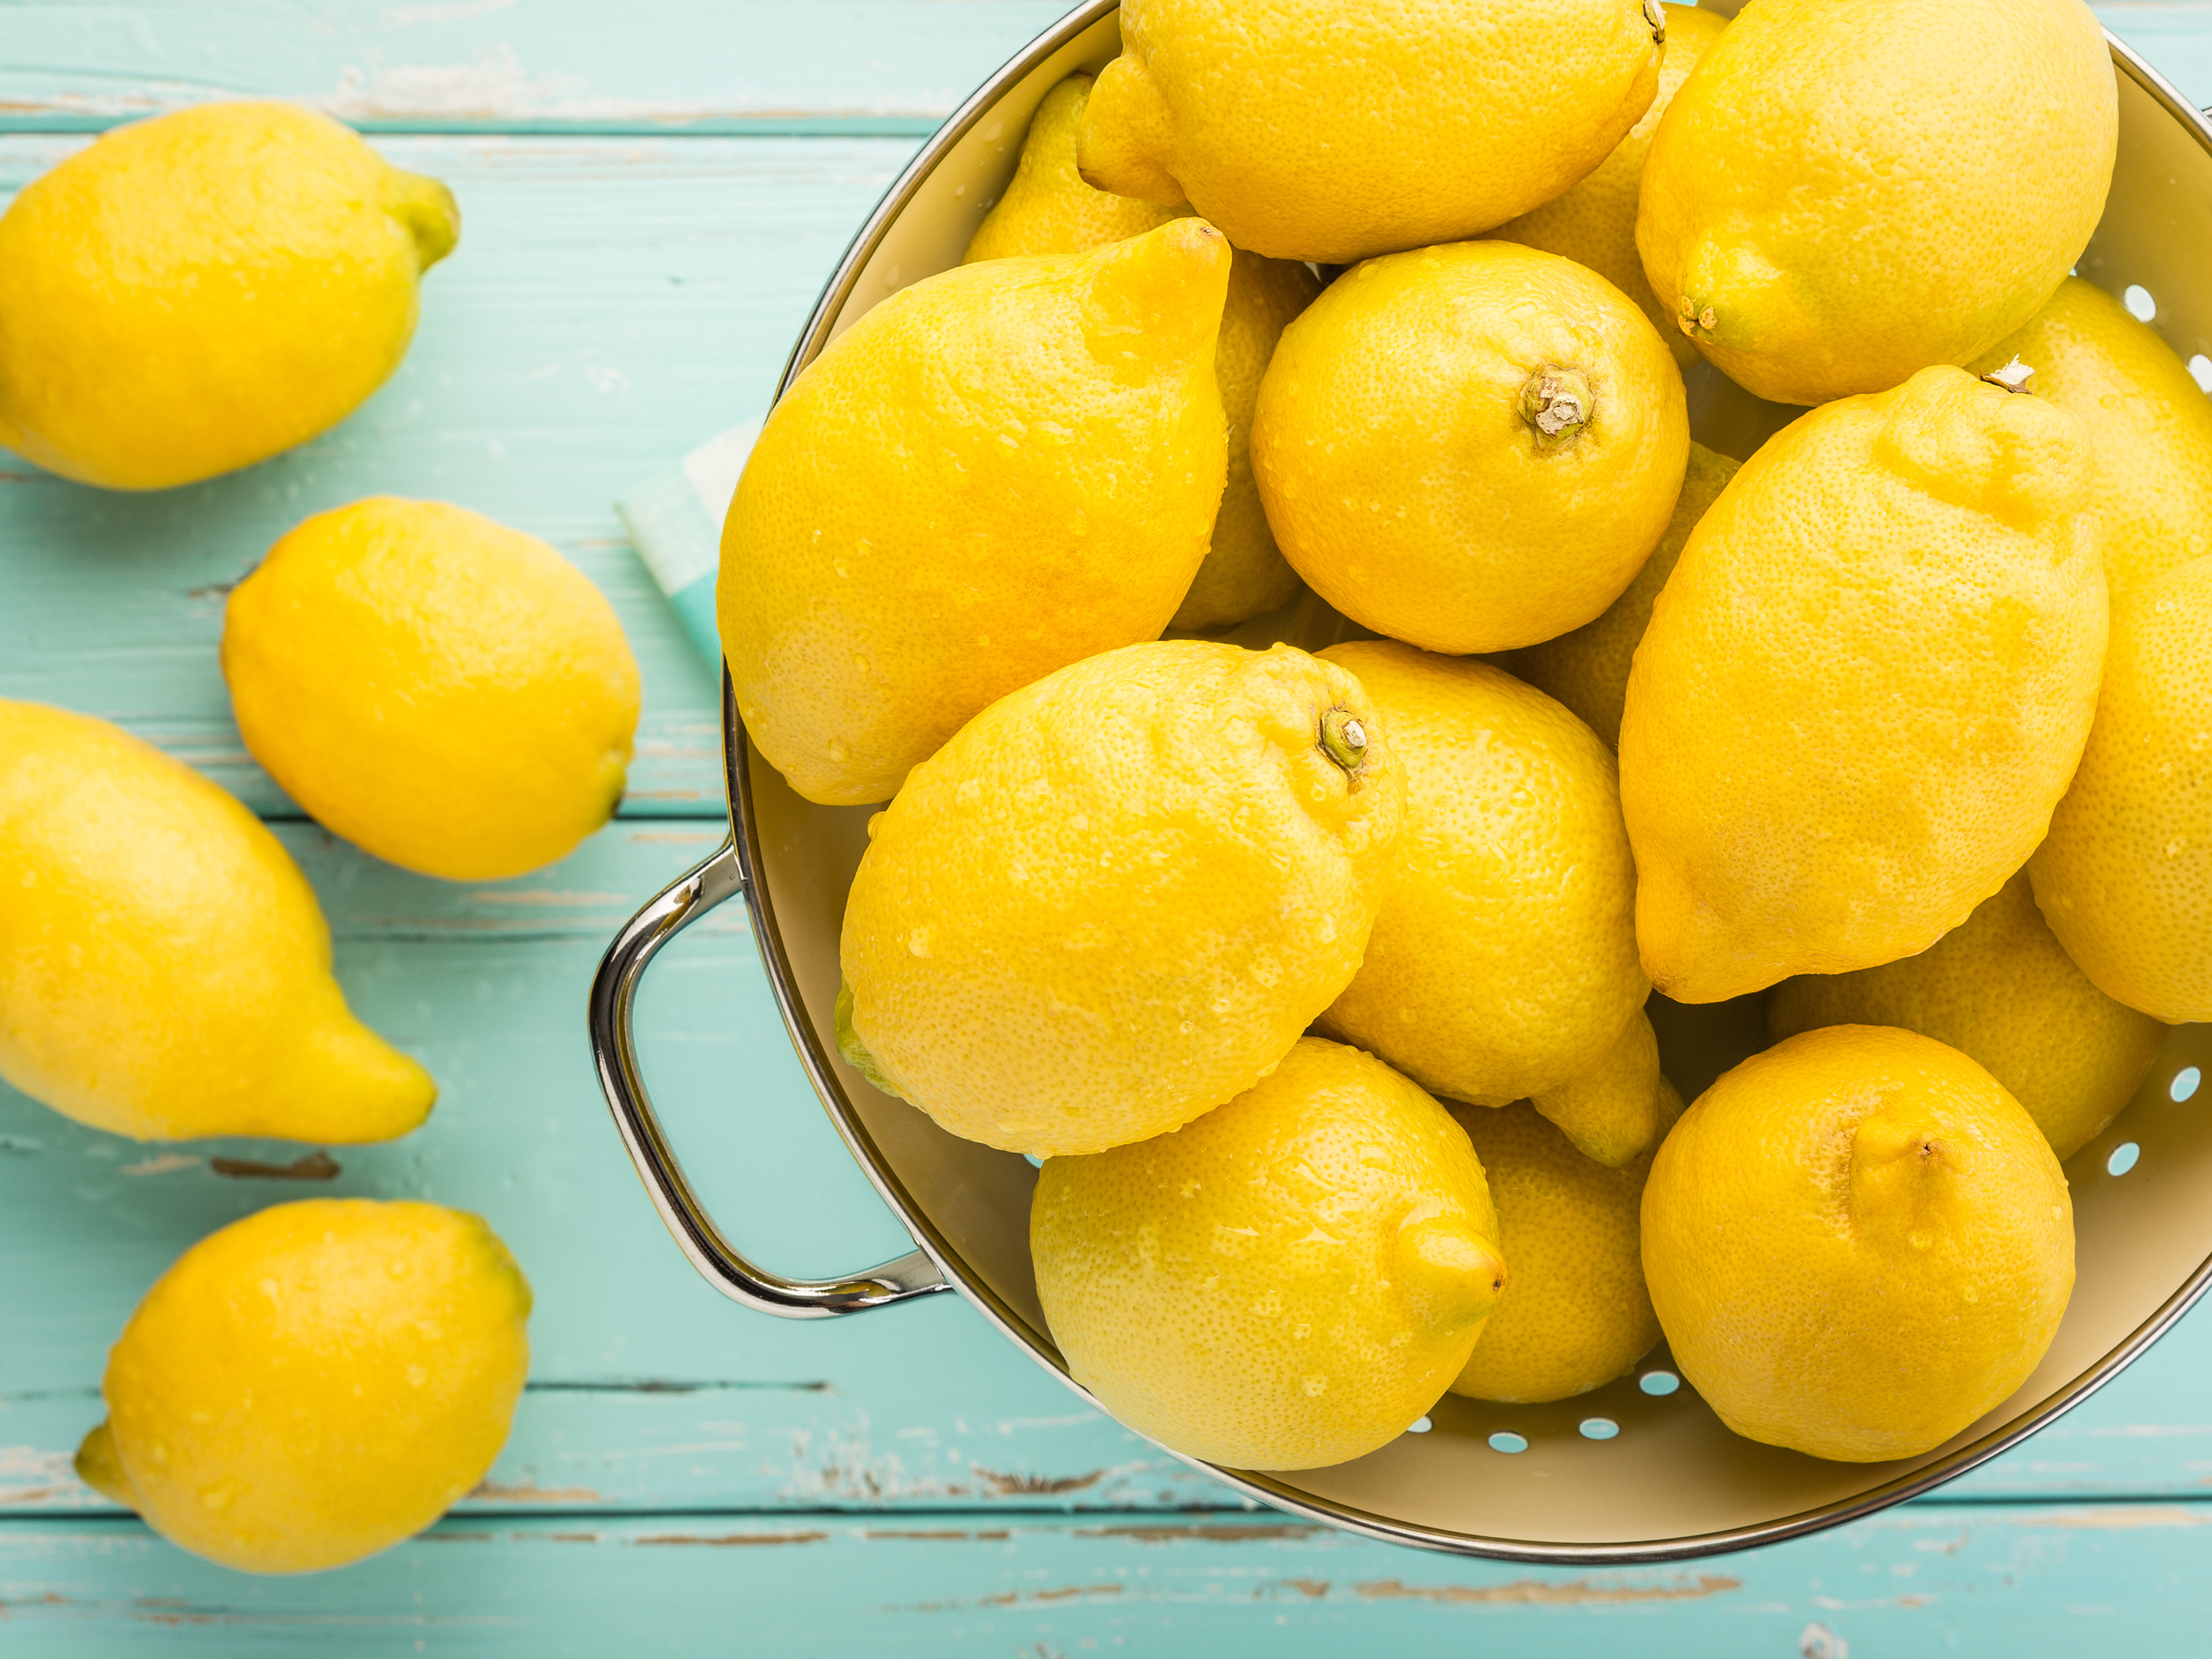 5 New Uses for Lemons